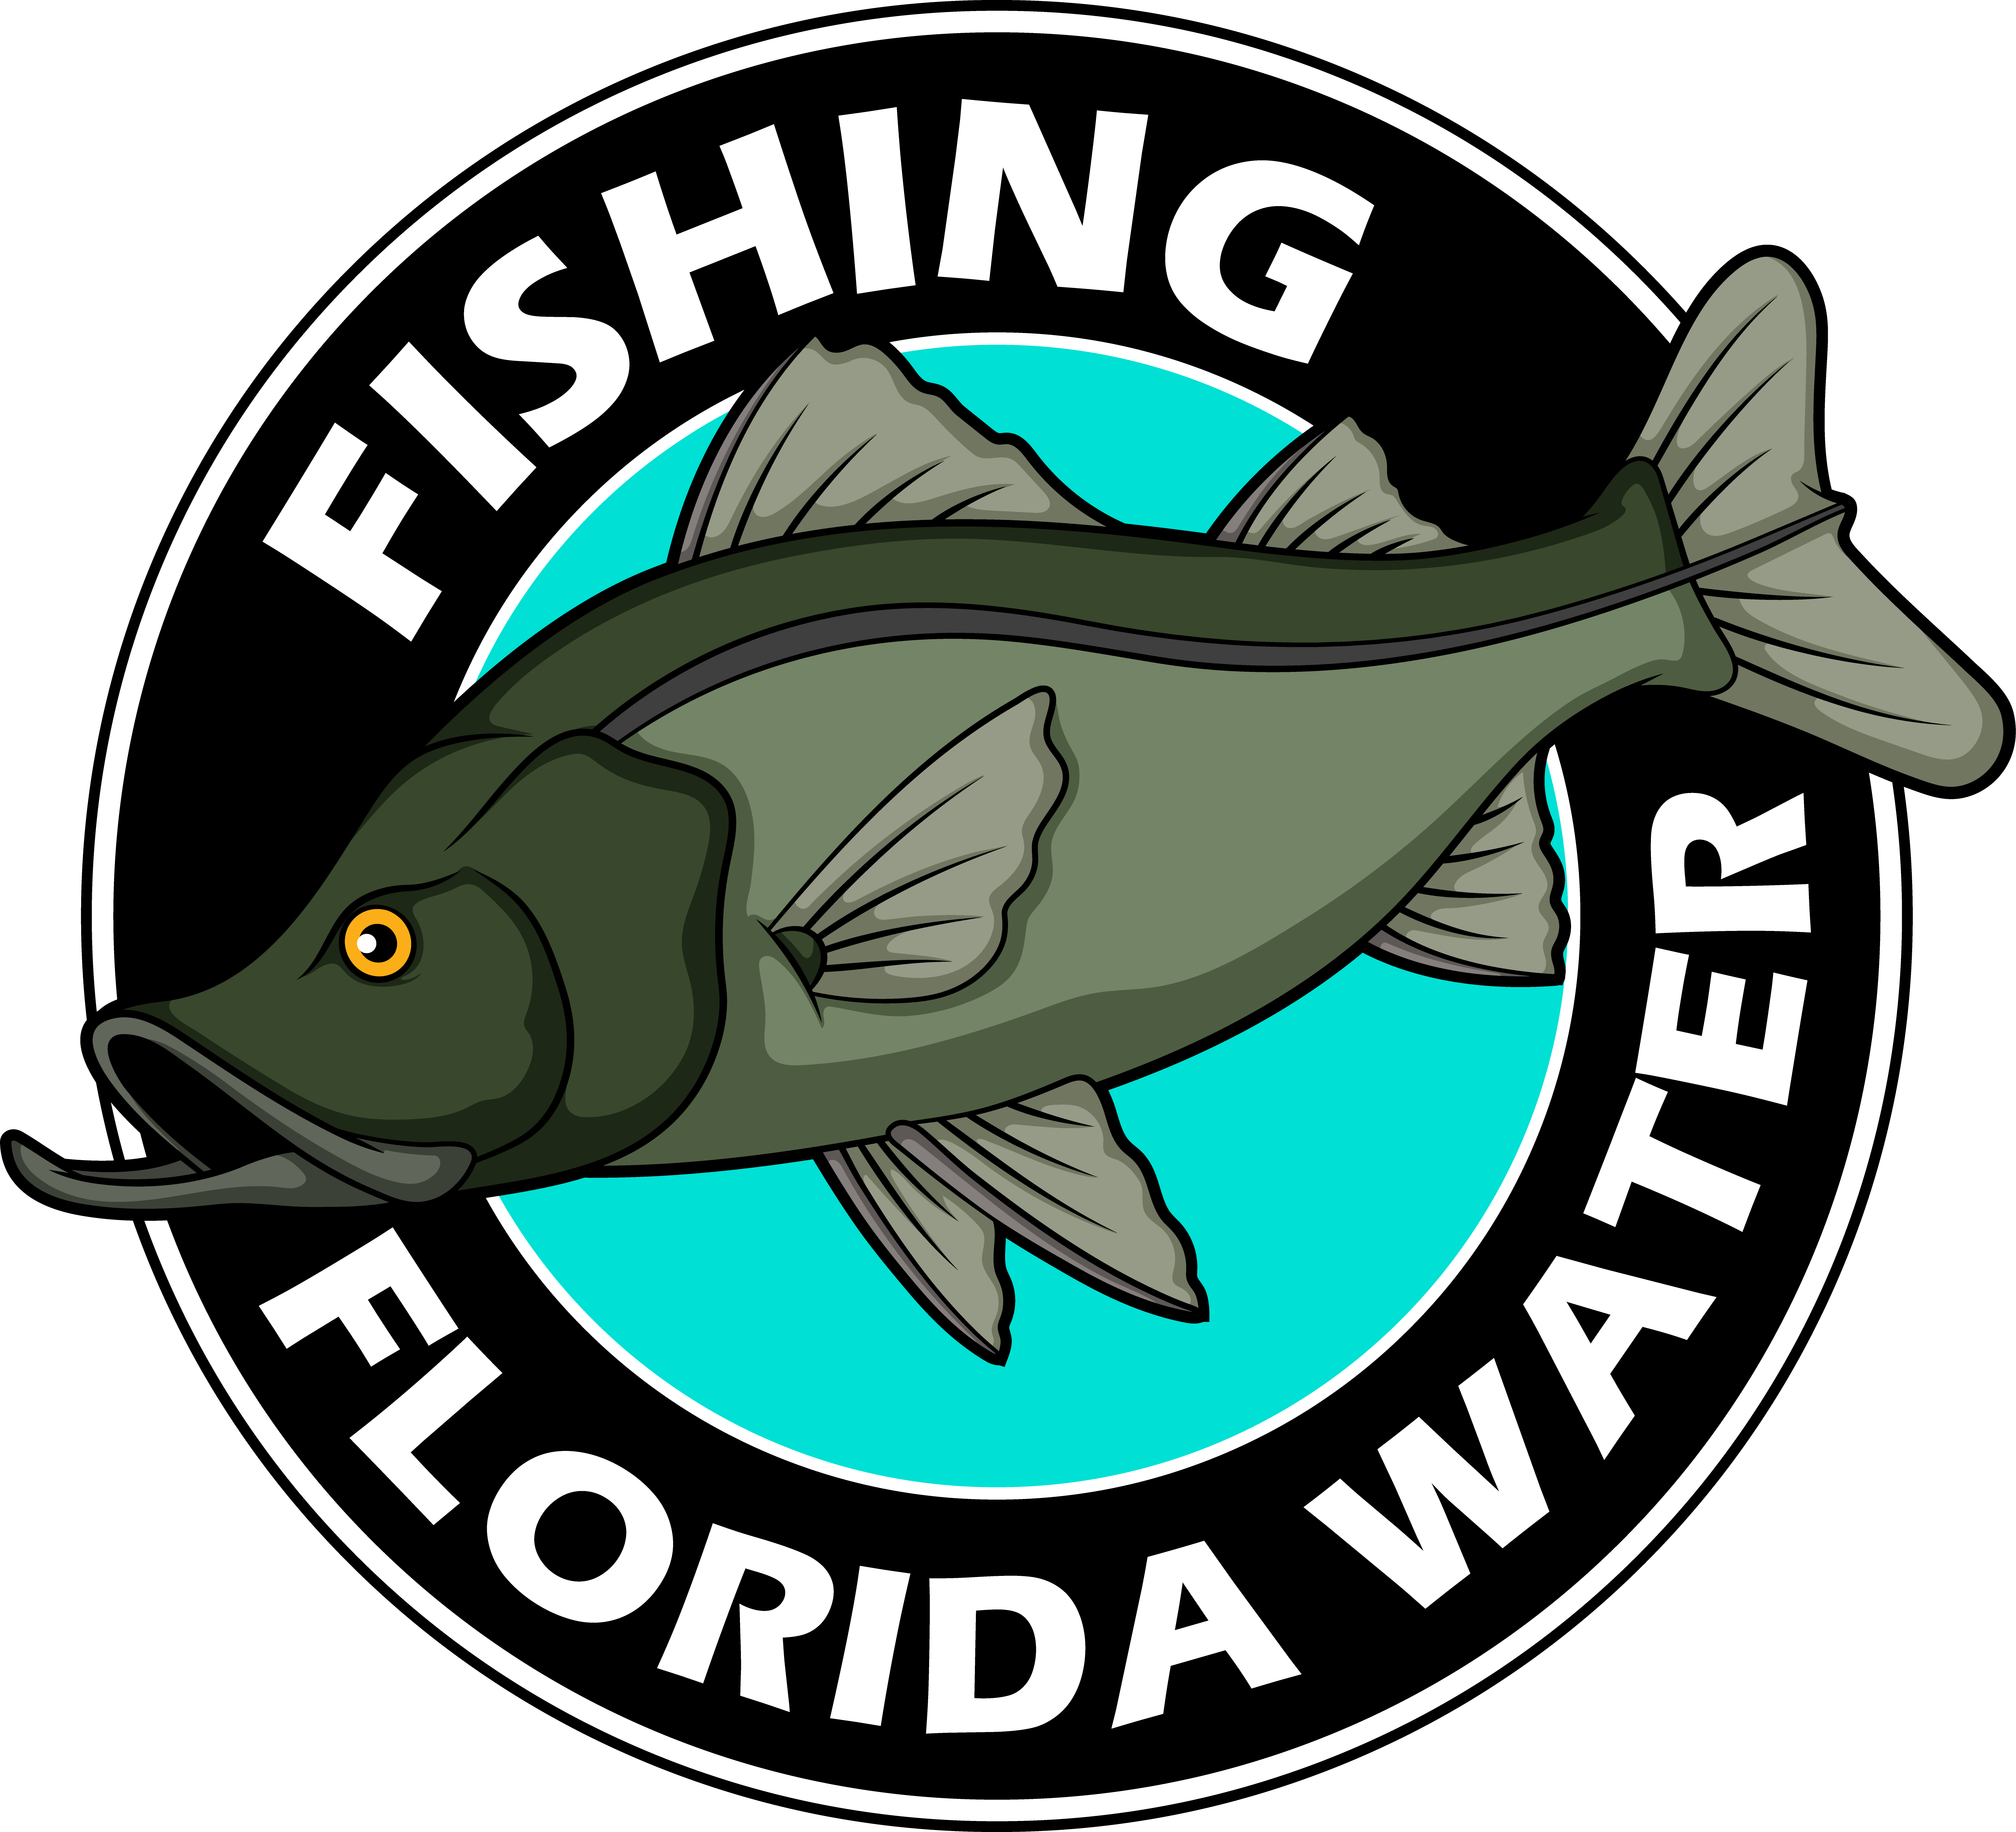 Fishing Florida Water LLC